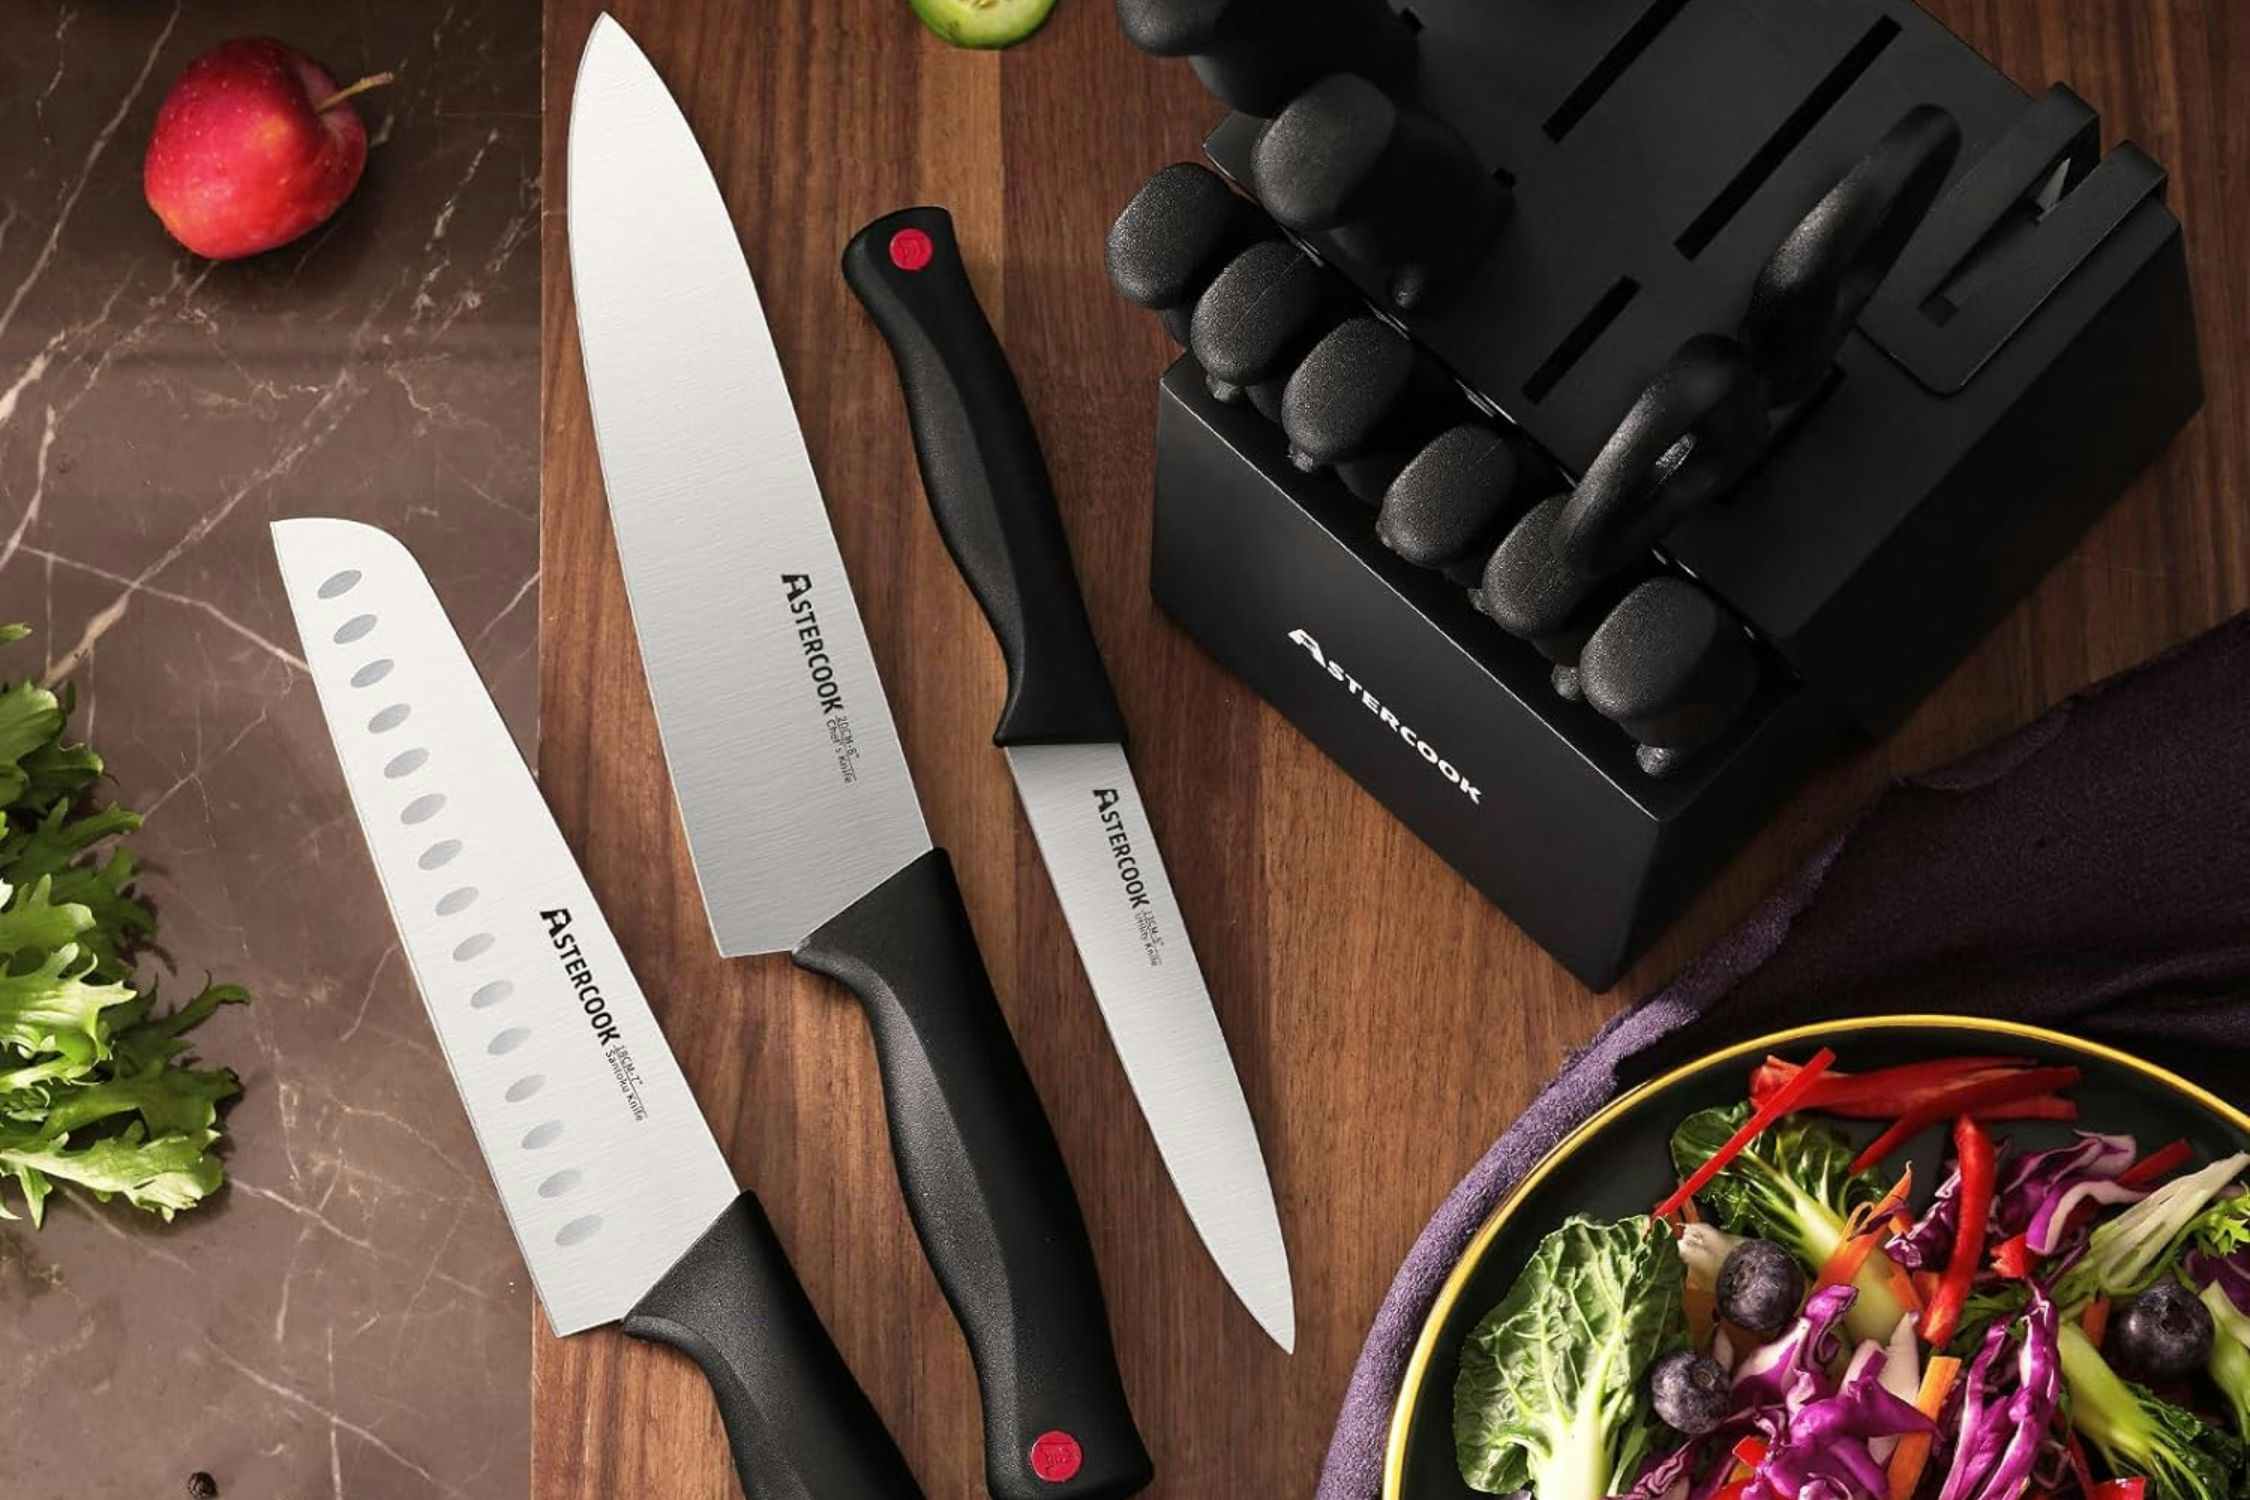 15-Piece Knife Set, Just $30 on Amazon 